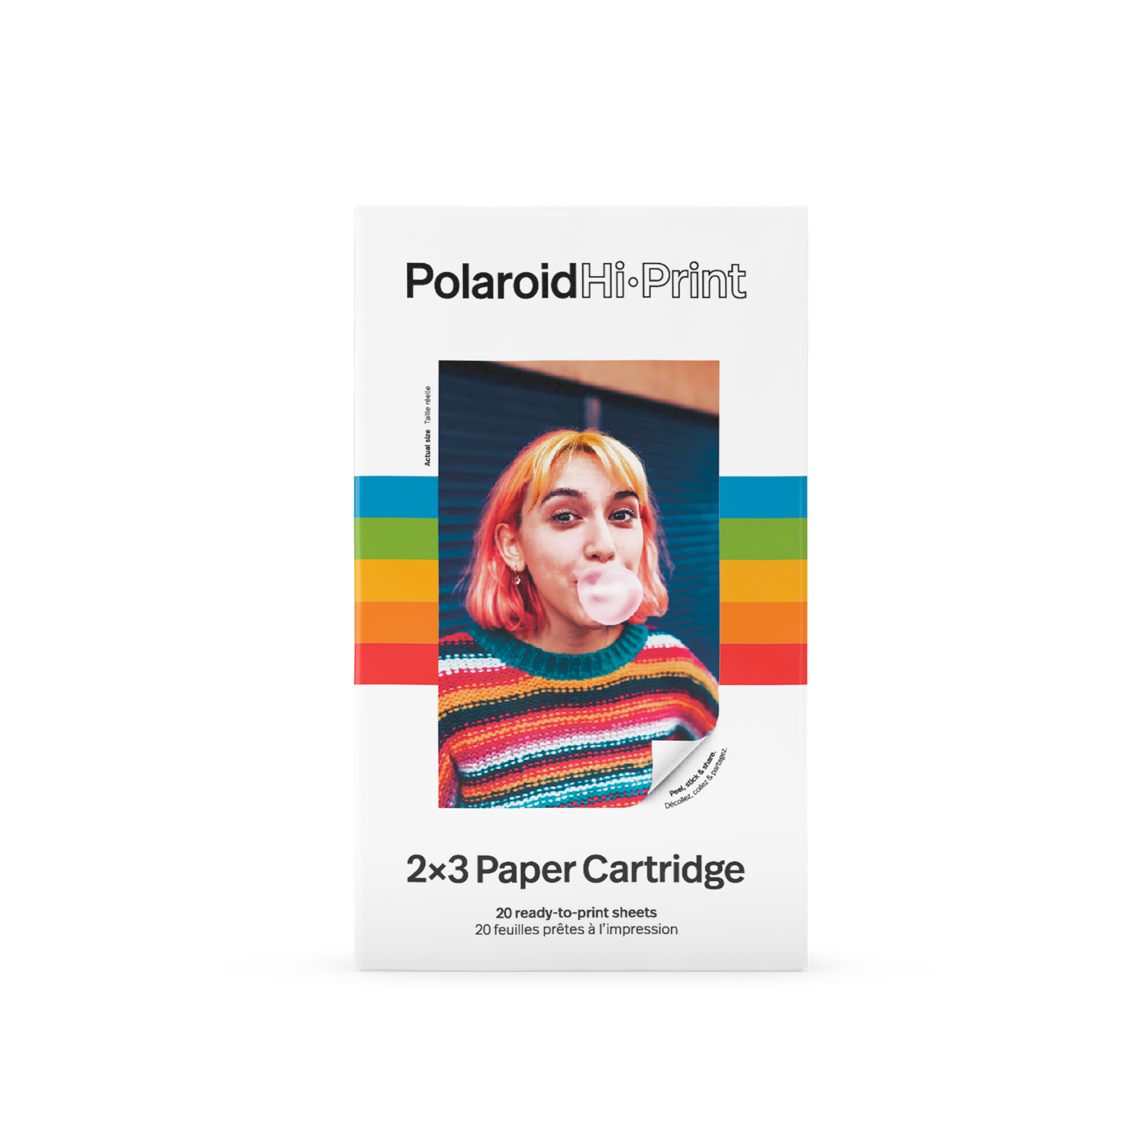 Cartucho Polaroid Hi Print 2x3 - 20 Fotos